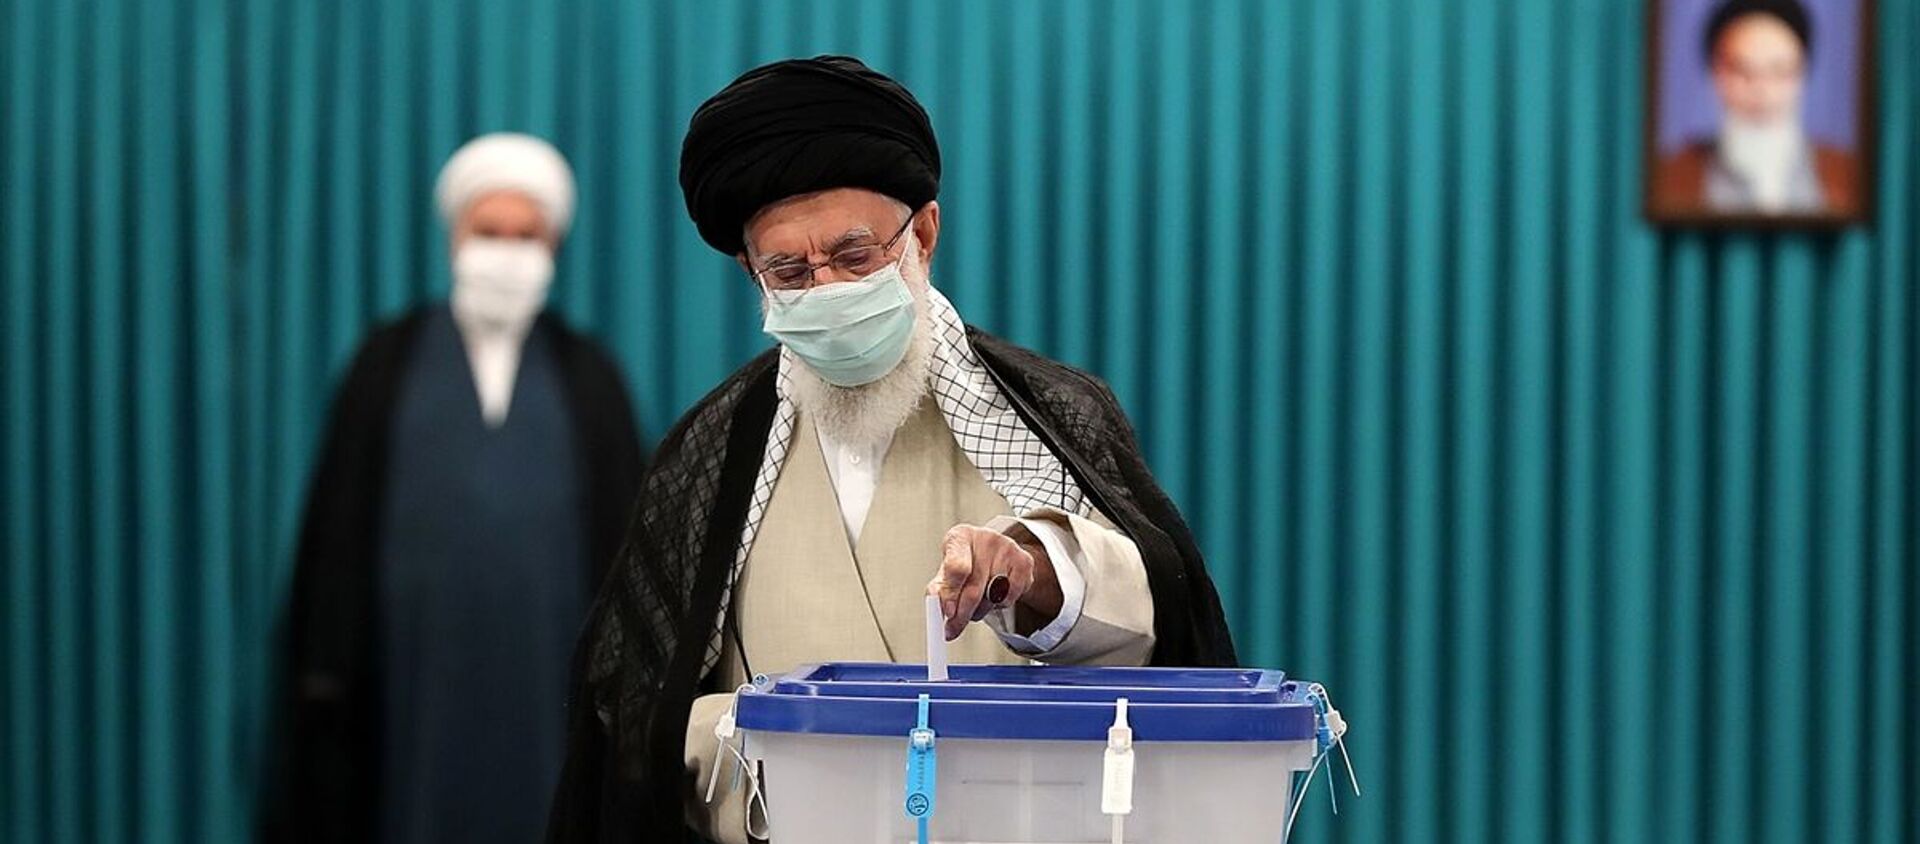 İran'da 13. Cumhurbaşkanlığı Seçimleri için oy verme işlemi başladı - Sputnik Türkiye, 1920, 18.06.2021